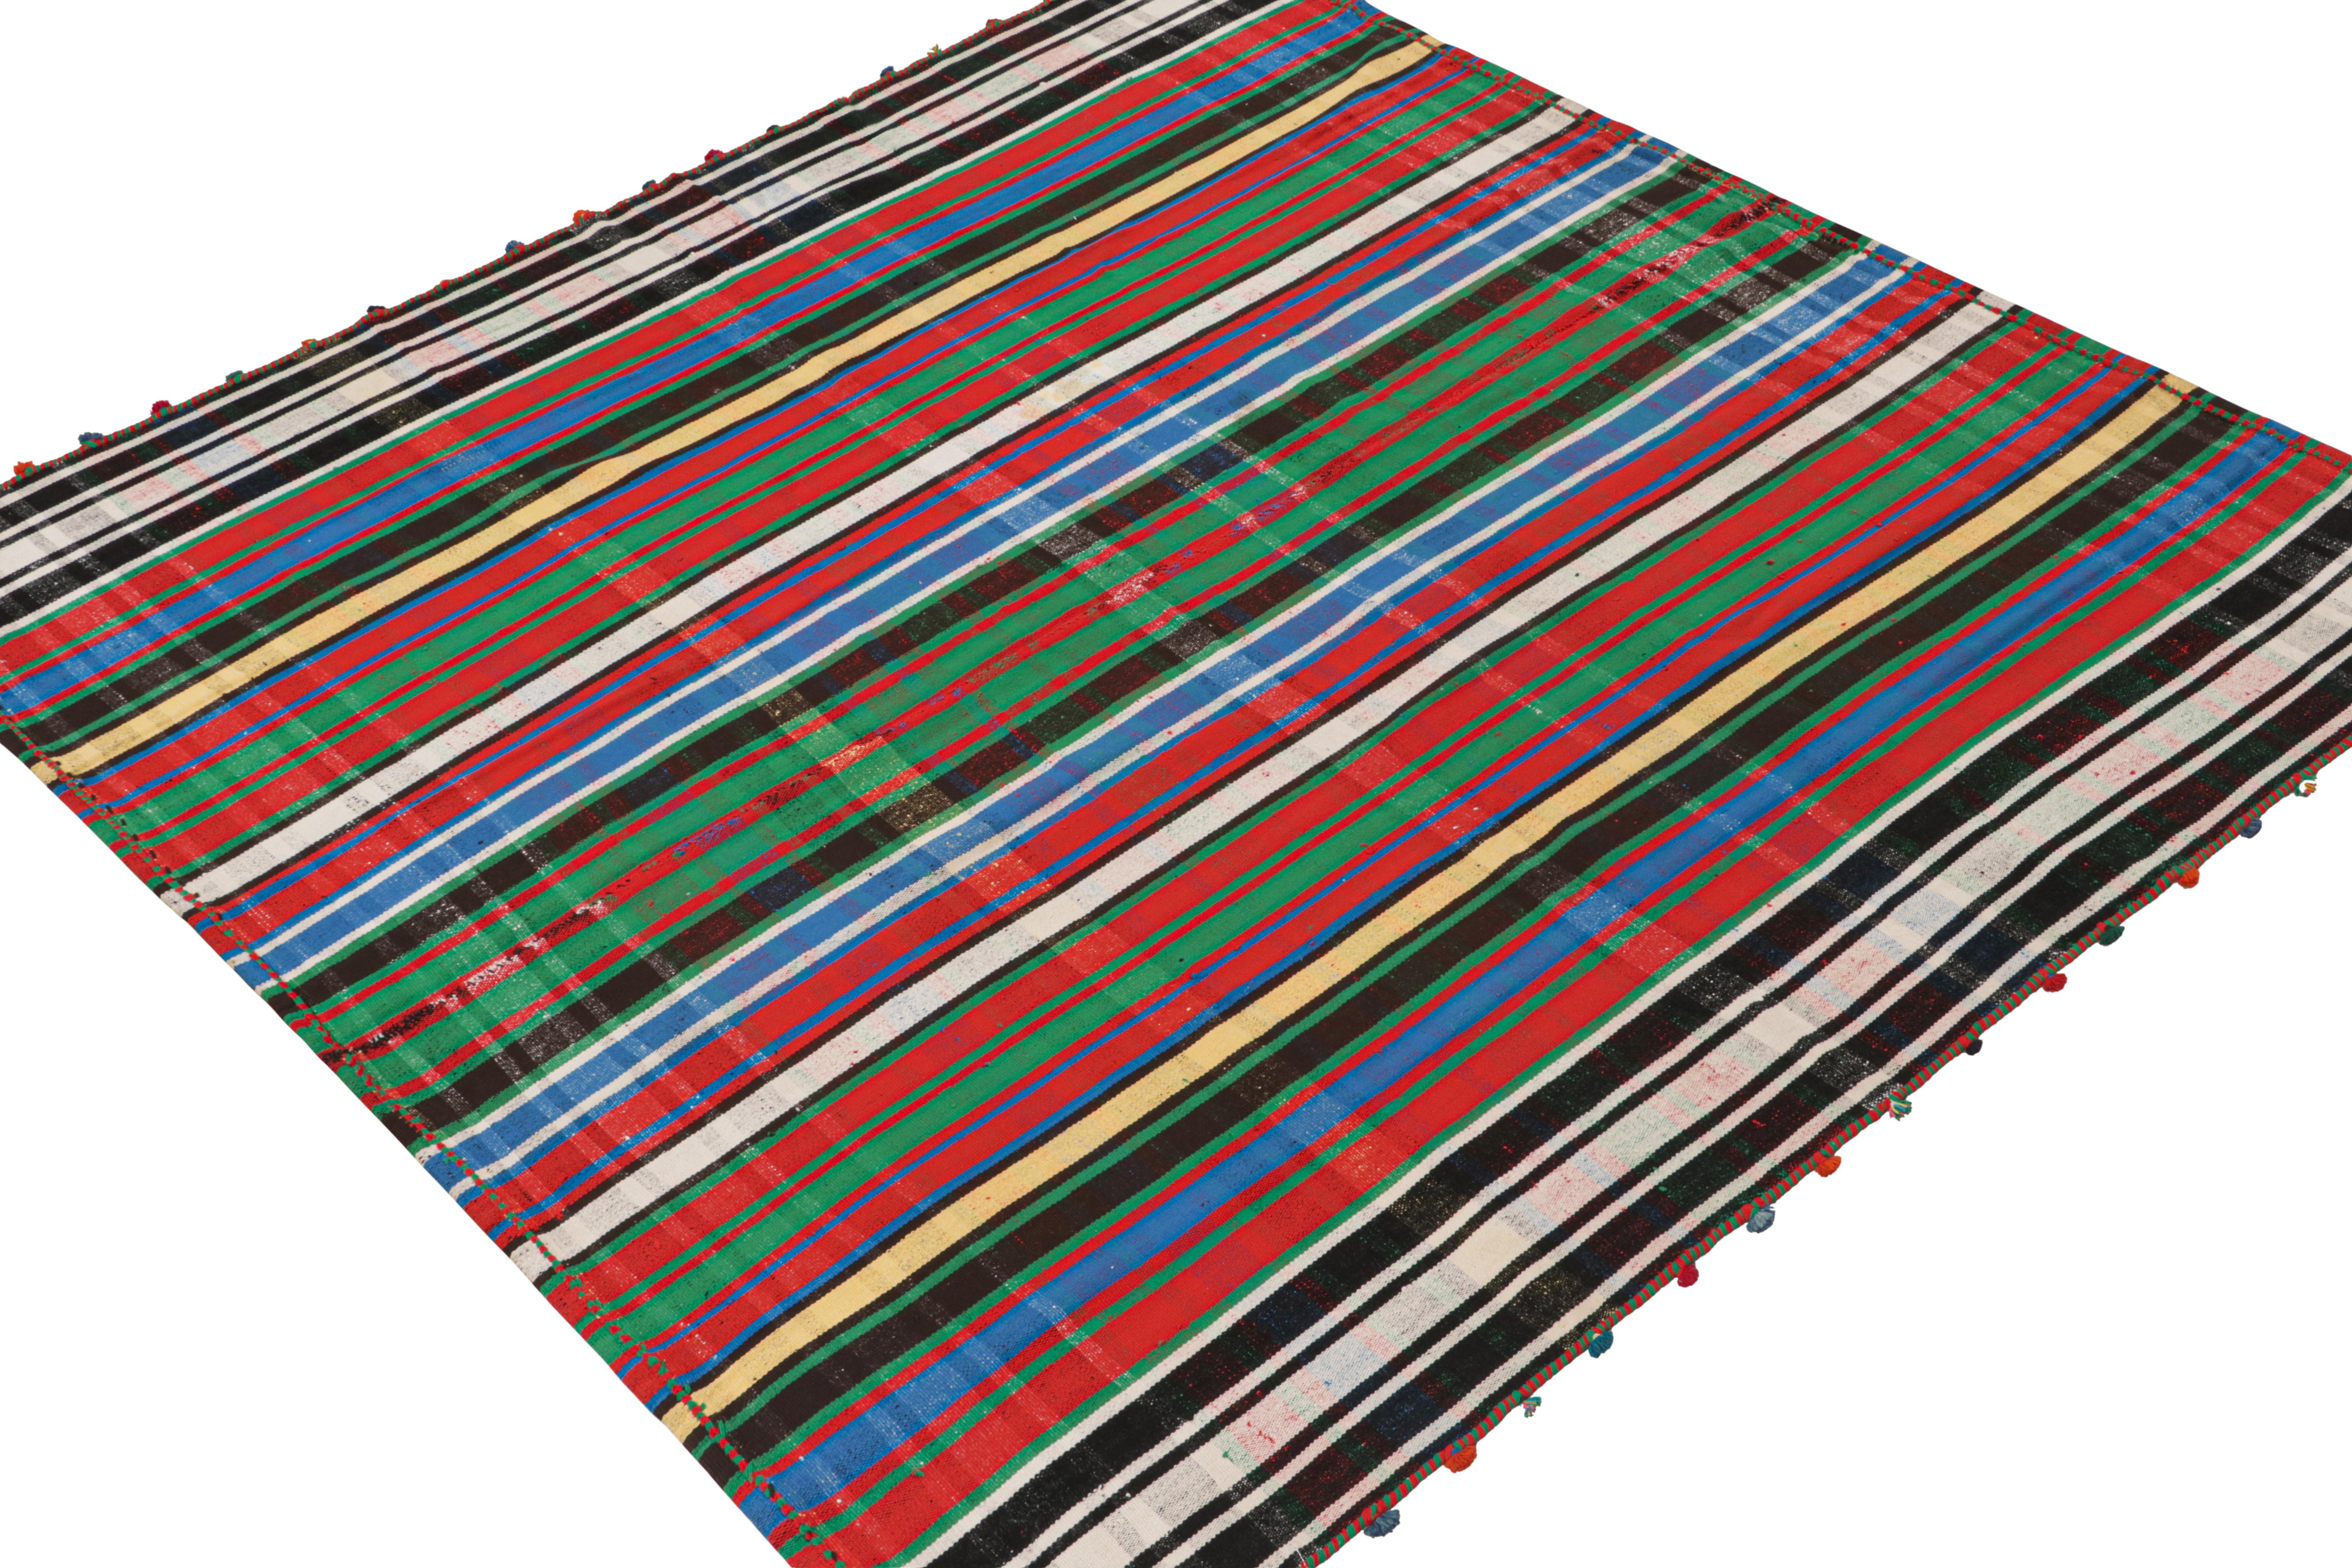 Ein Vintage 5x6 persischen Kelim-Teppich, handgewebt in Wolle ca. 1950-1960.

Weiter zum Design:

Kenner wissen die Technik des Paneelwebens zu schätzen, bei der die Stammesweber mehrere Stücke zu größeren Kilims zusammenfügen. Auf diese Weise